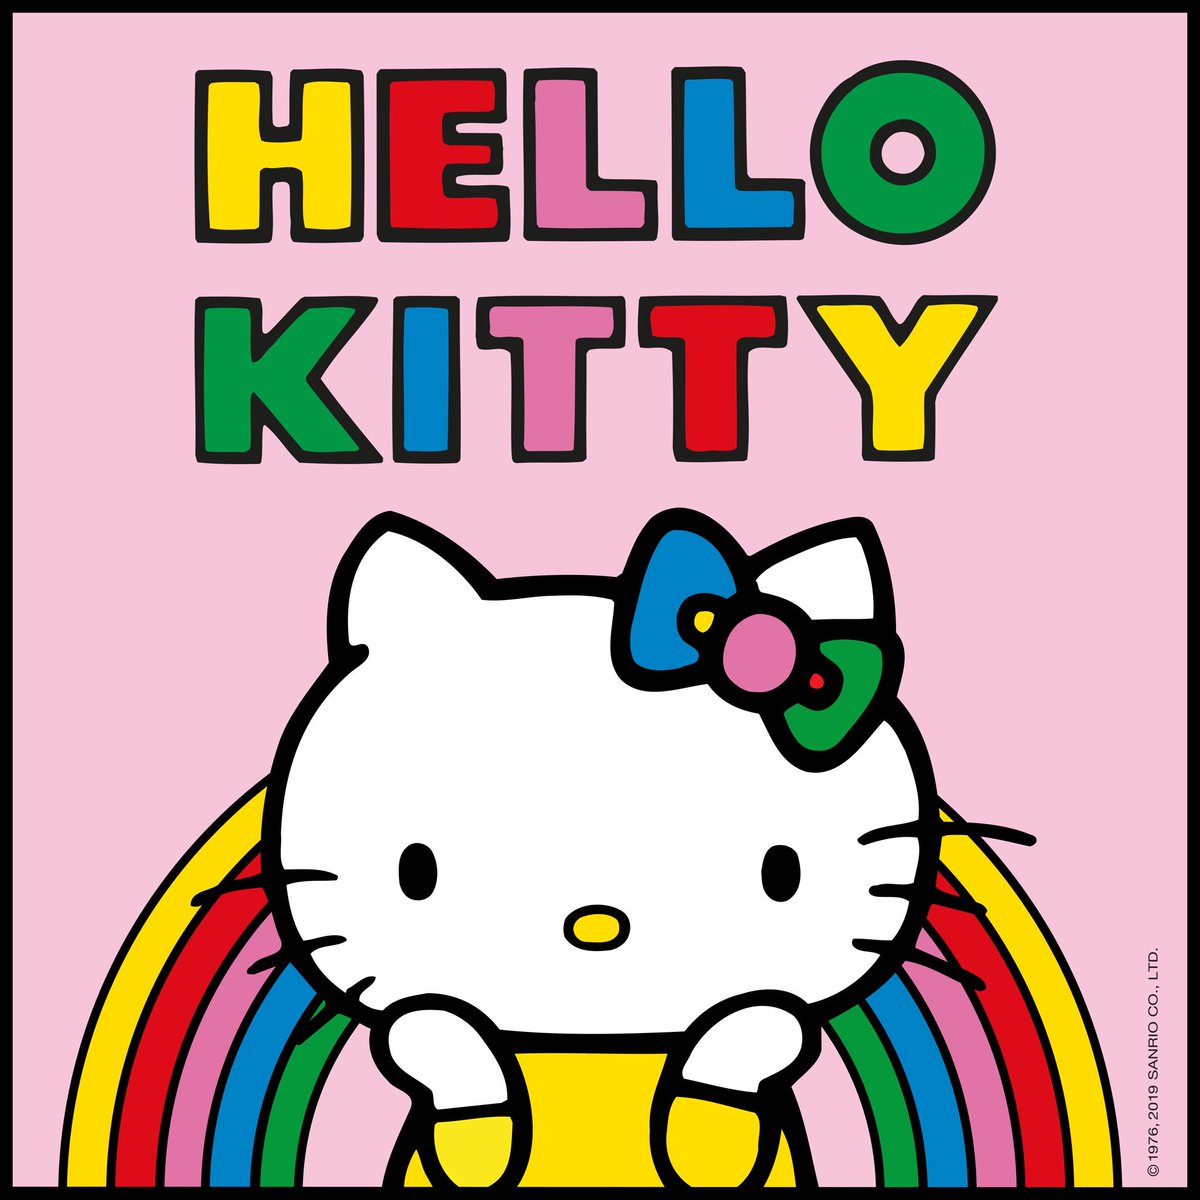 49843 Multicolore RNBW Figura da Collezione Funko- Pop Sanrio 2020-Hello Pride 2020 Hello Kitty